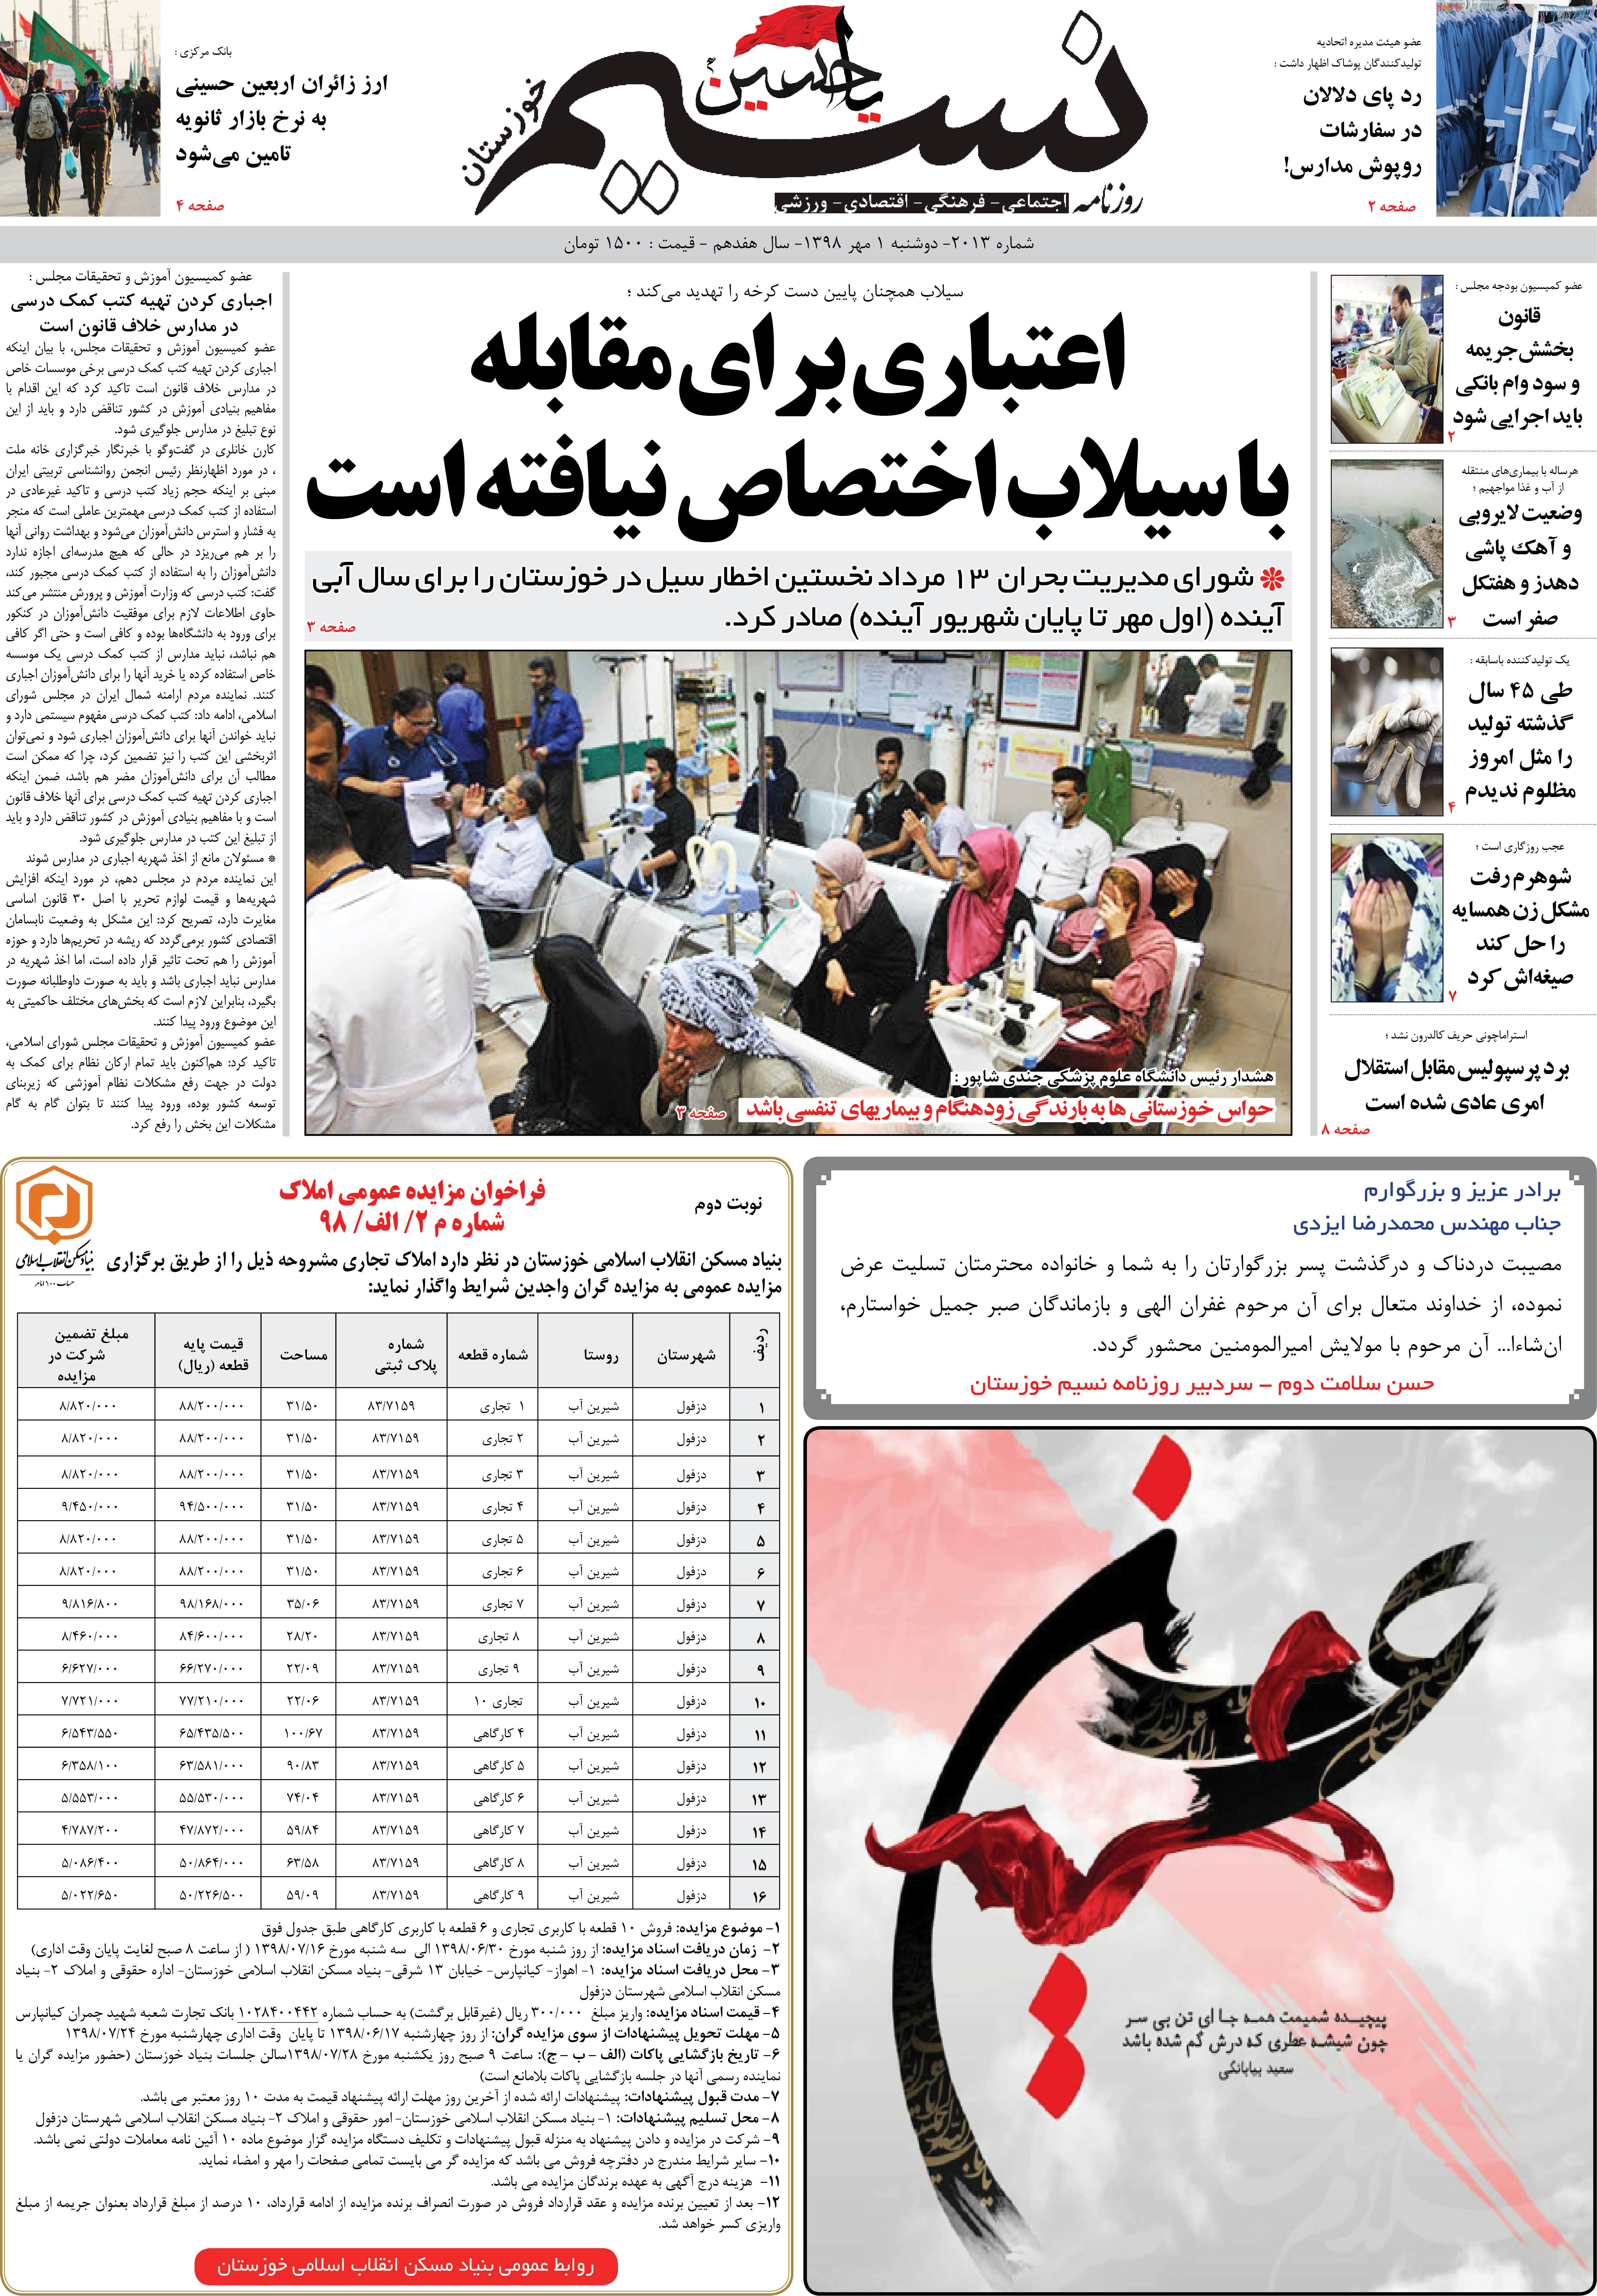 صفحه اصلی روزنامه نسیم شماره 2013 